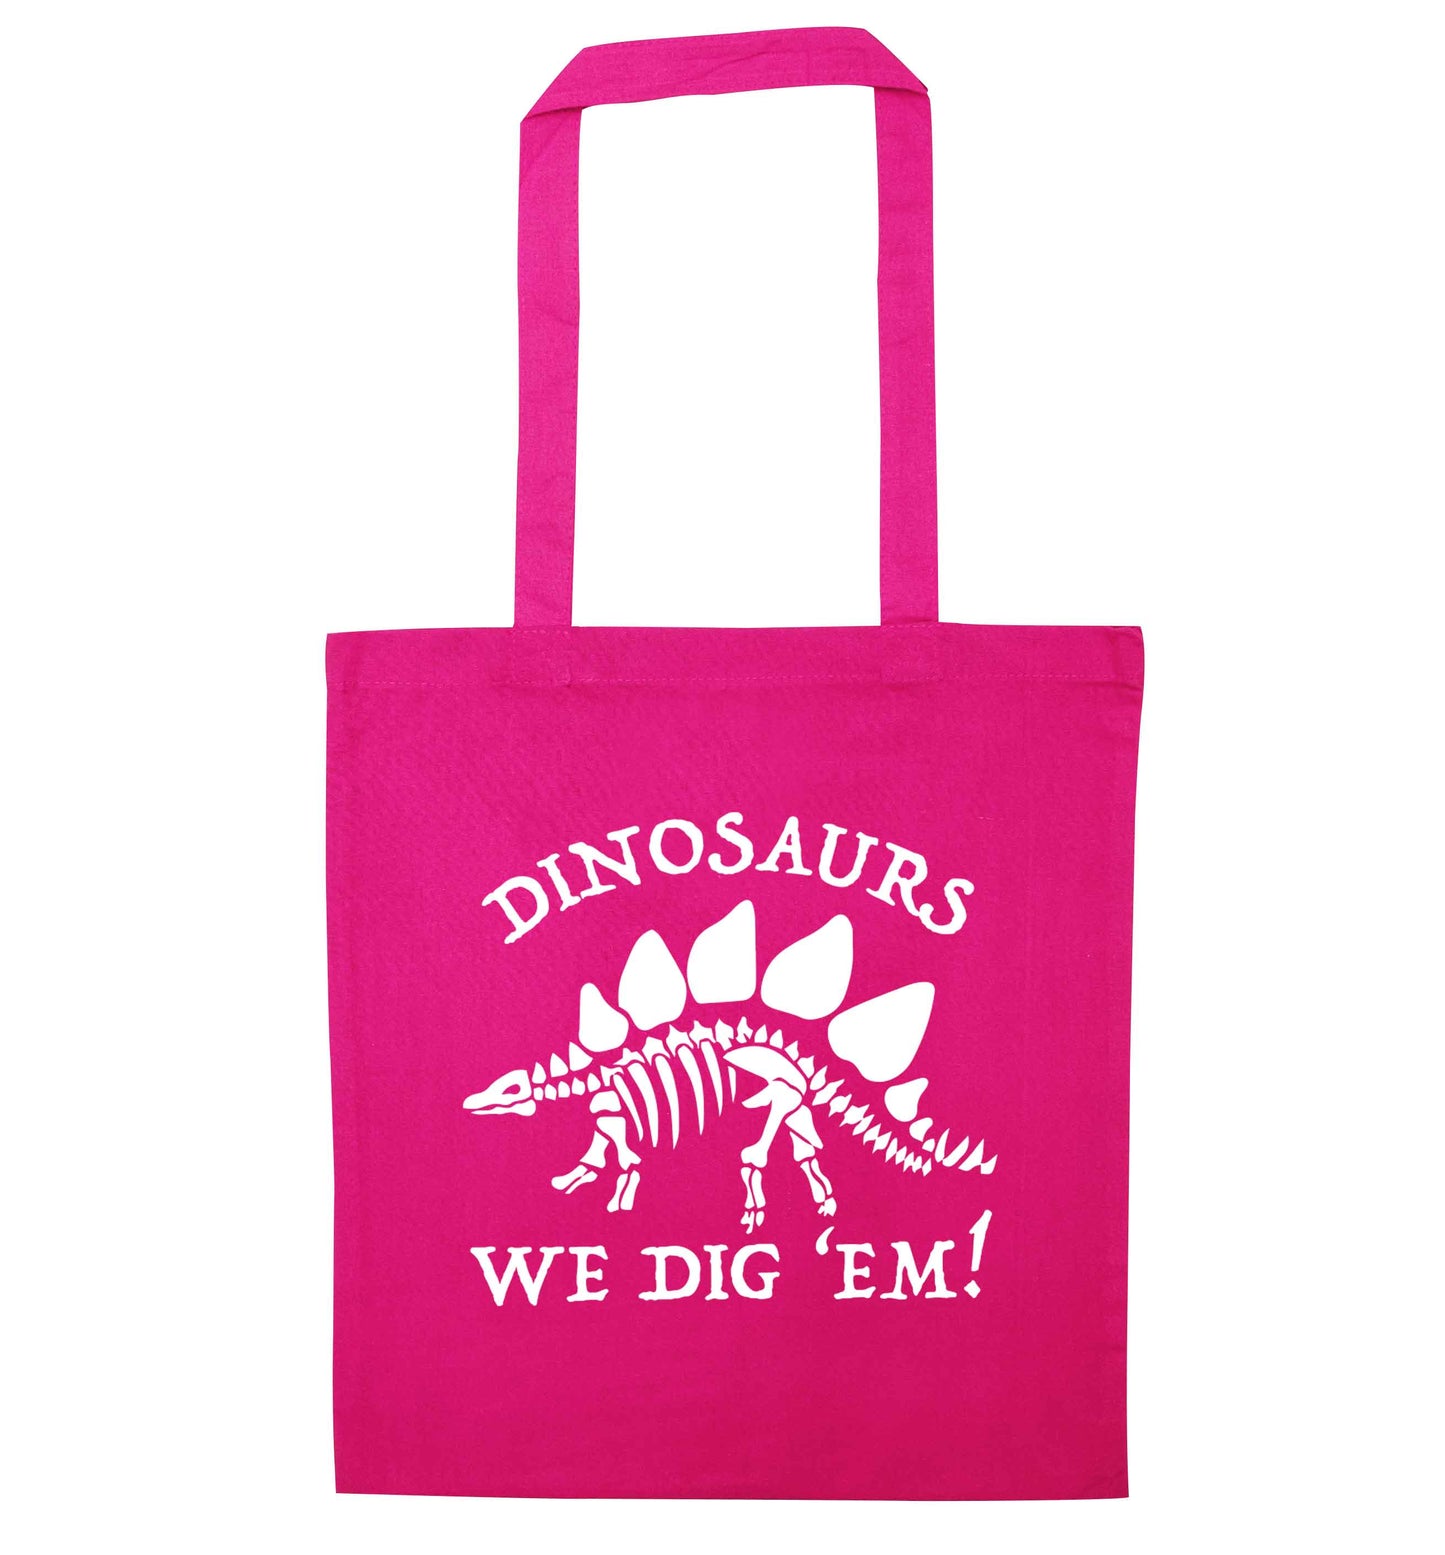 Dinosaurs we dig 'em! pink tote bag